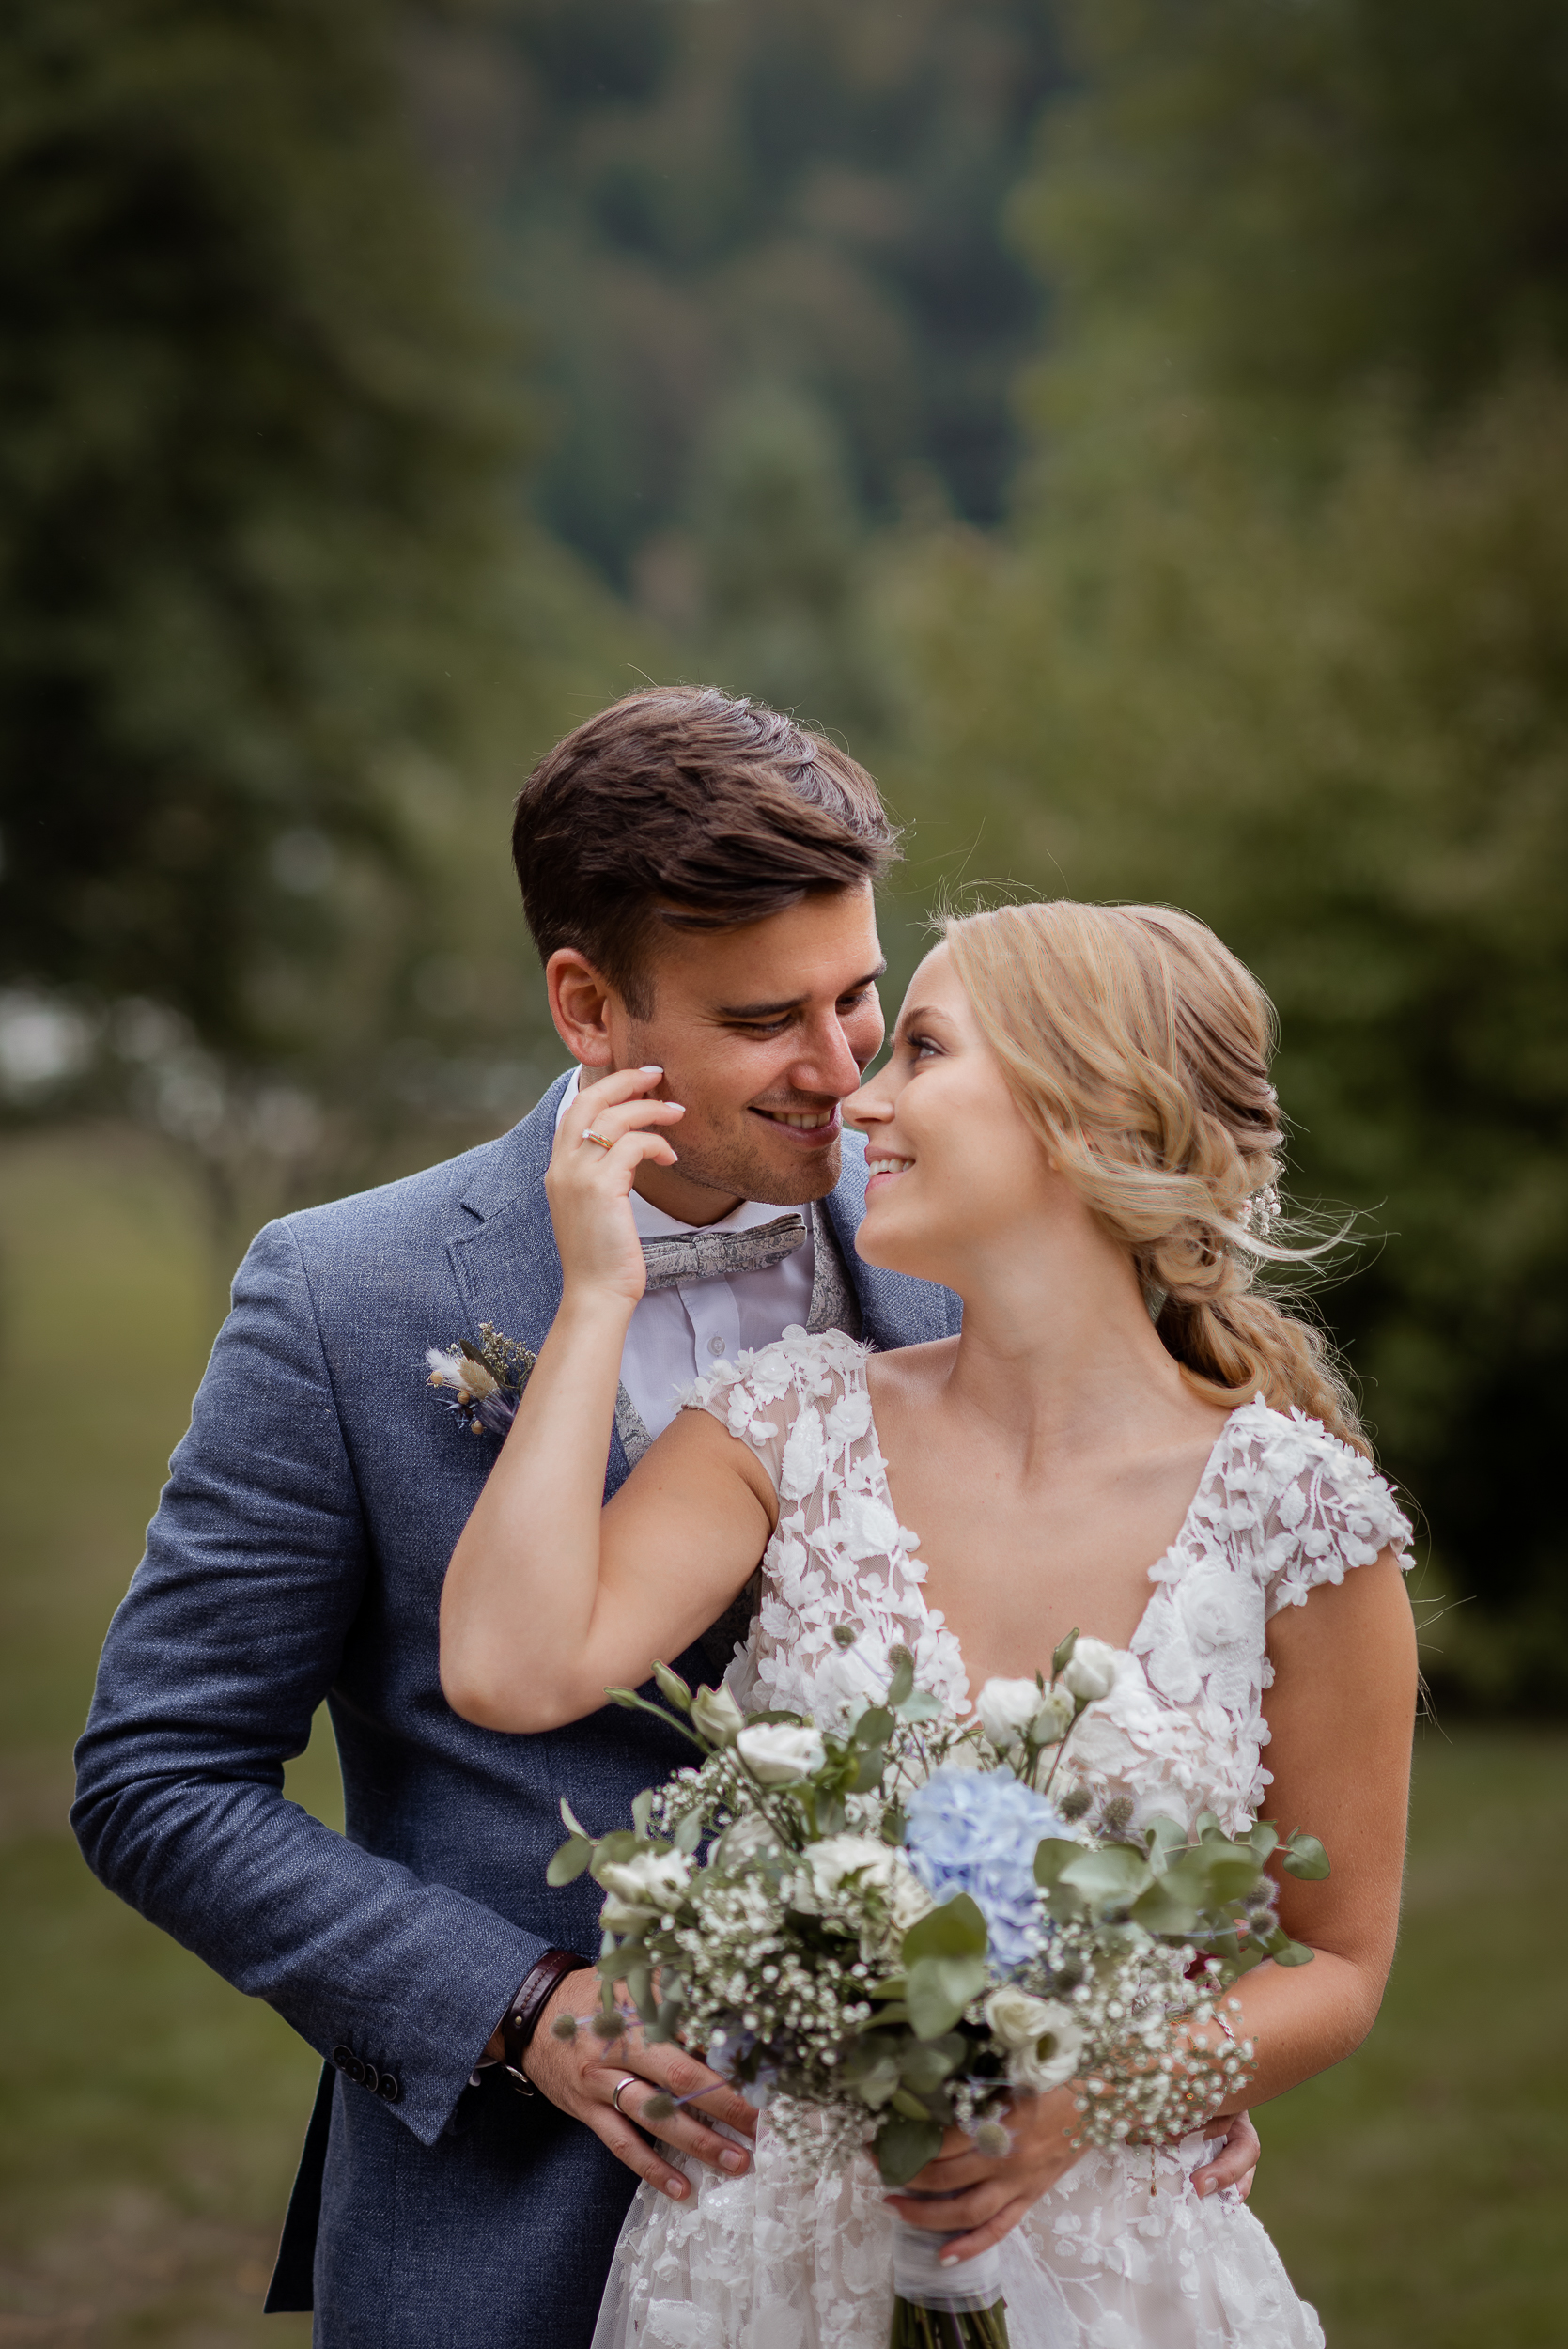 Ein Brautpaar Fotoshooting im Kurpark in Todtmoos. Der Bräutigam umarmt die Braut von hinten, während sie sich in die Augen schauen. Die Braut streicht sanft über das Gesicht des Bräutigams und hält in der linken Hand ihren Blumenstrauß.